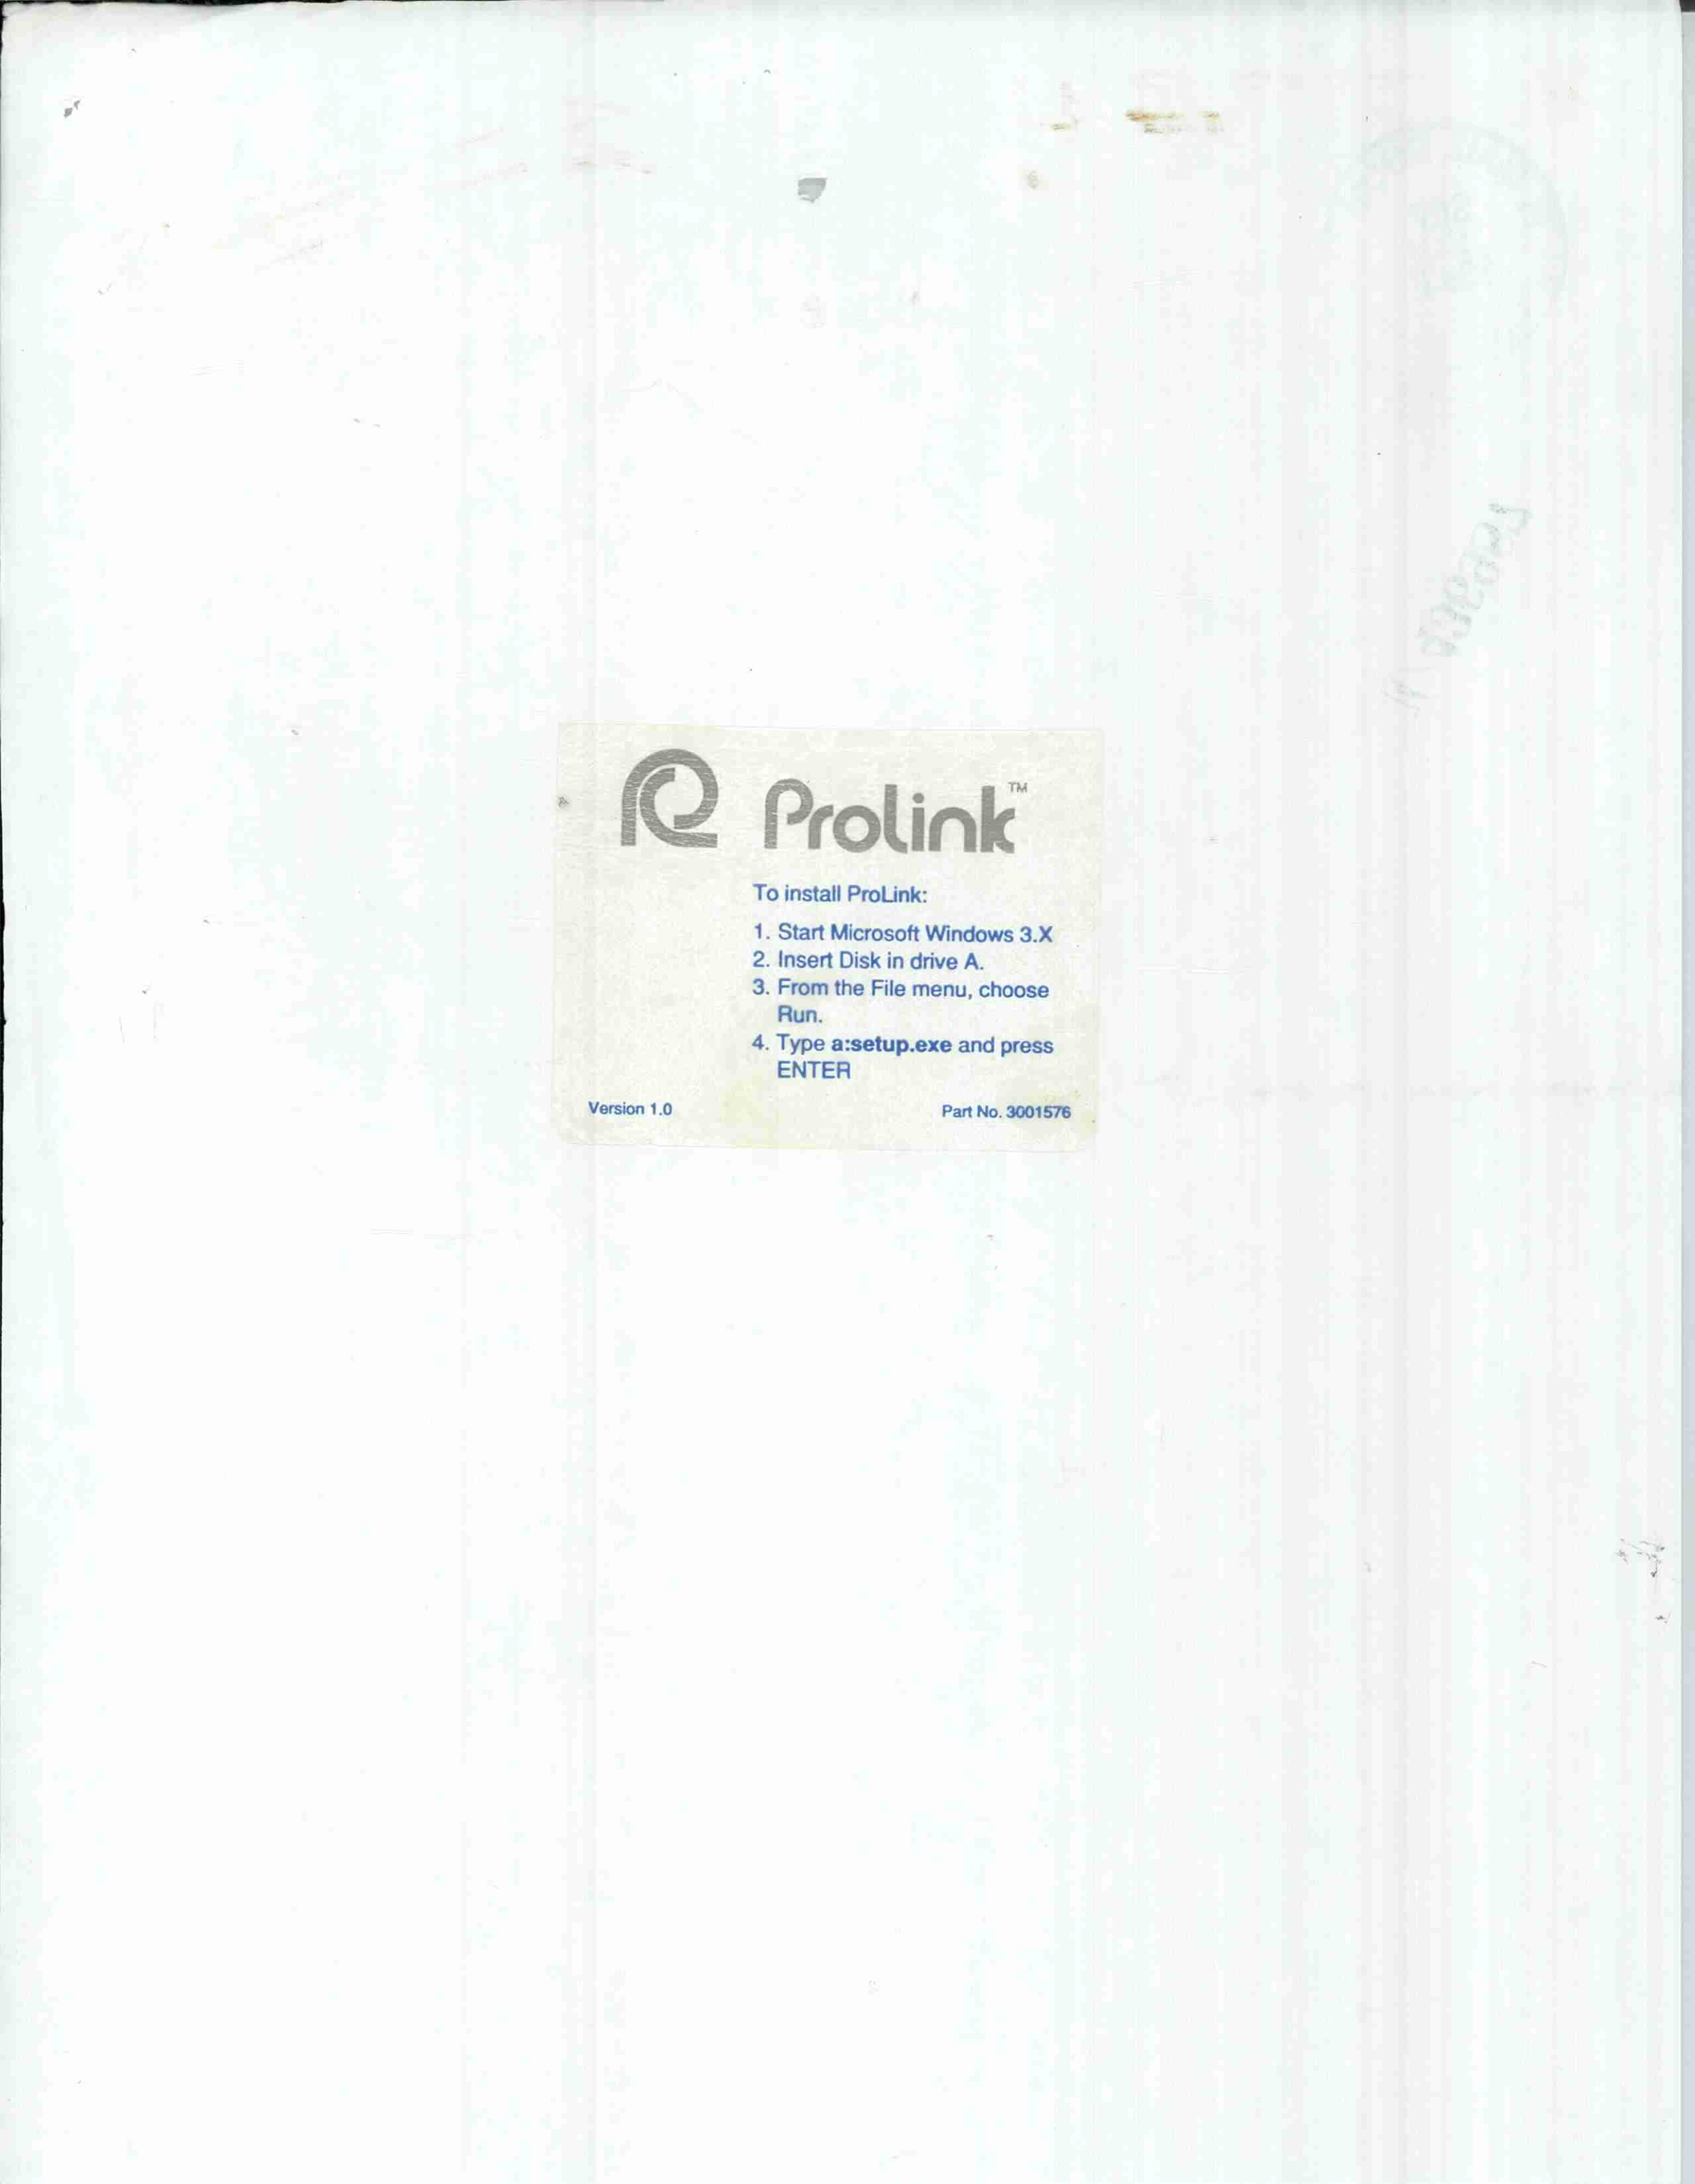 Trademark Logo PROLINK